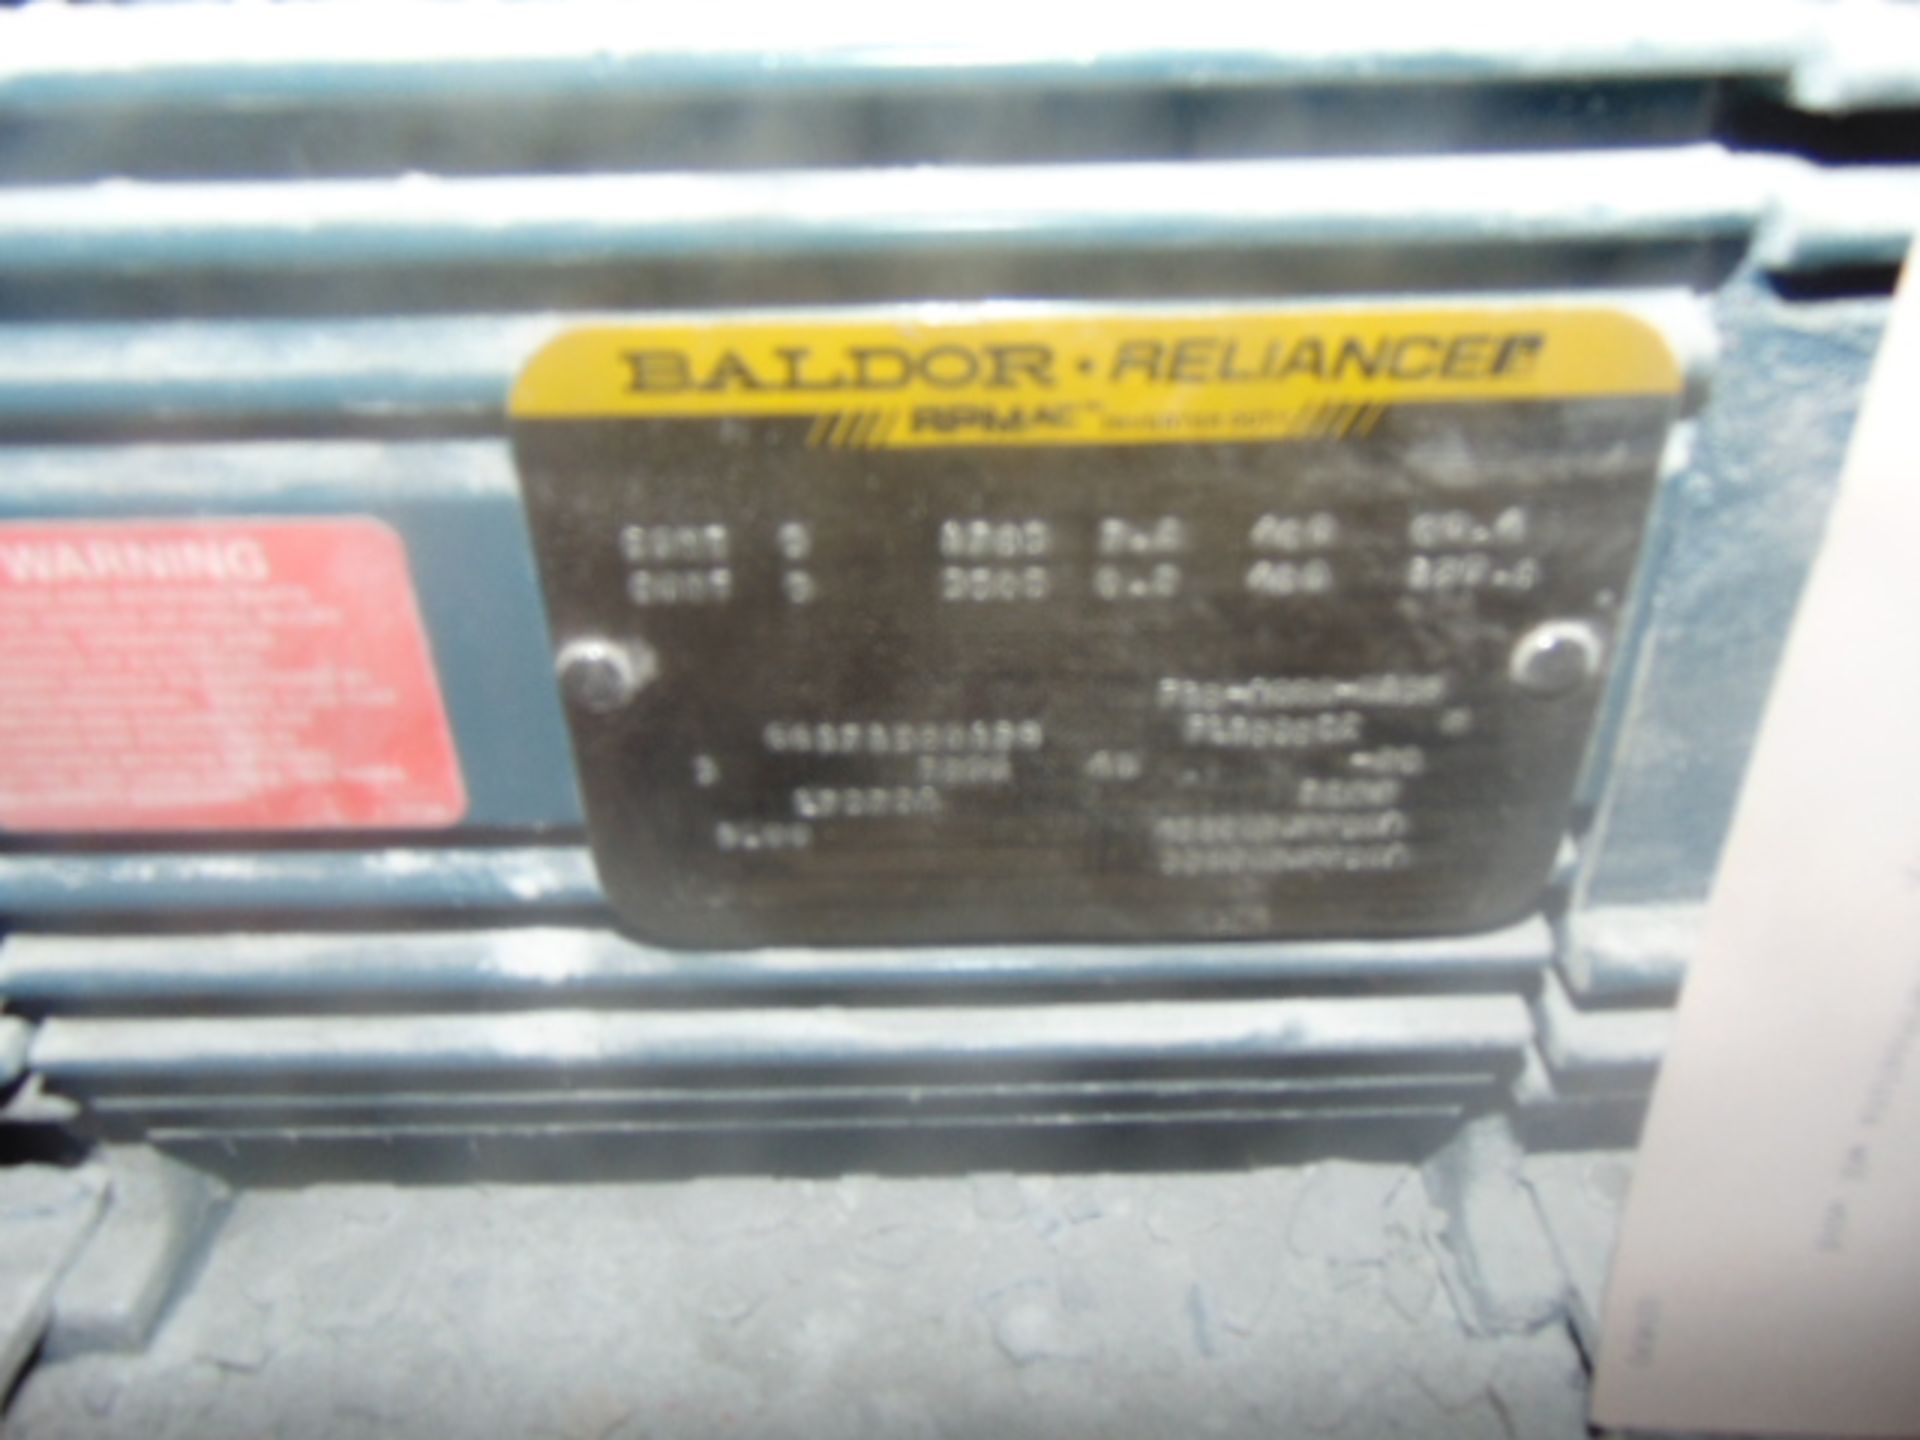 ELECTRIC MOTOR, BALDOR, 5 HP - Image 2 of 2